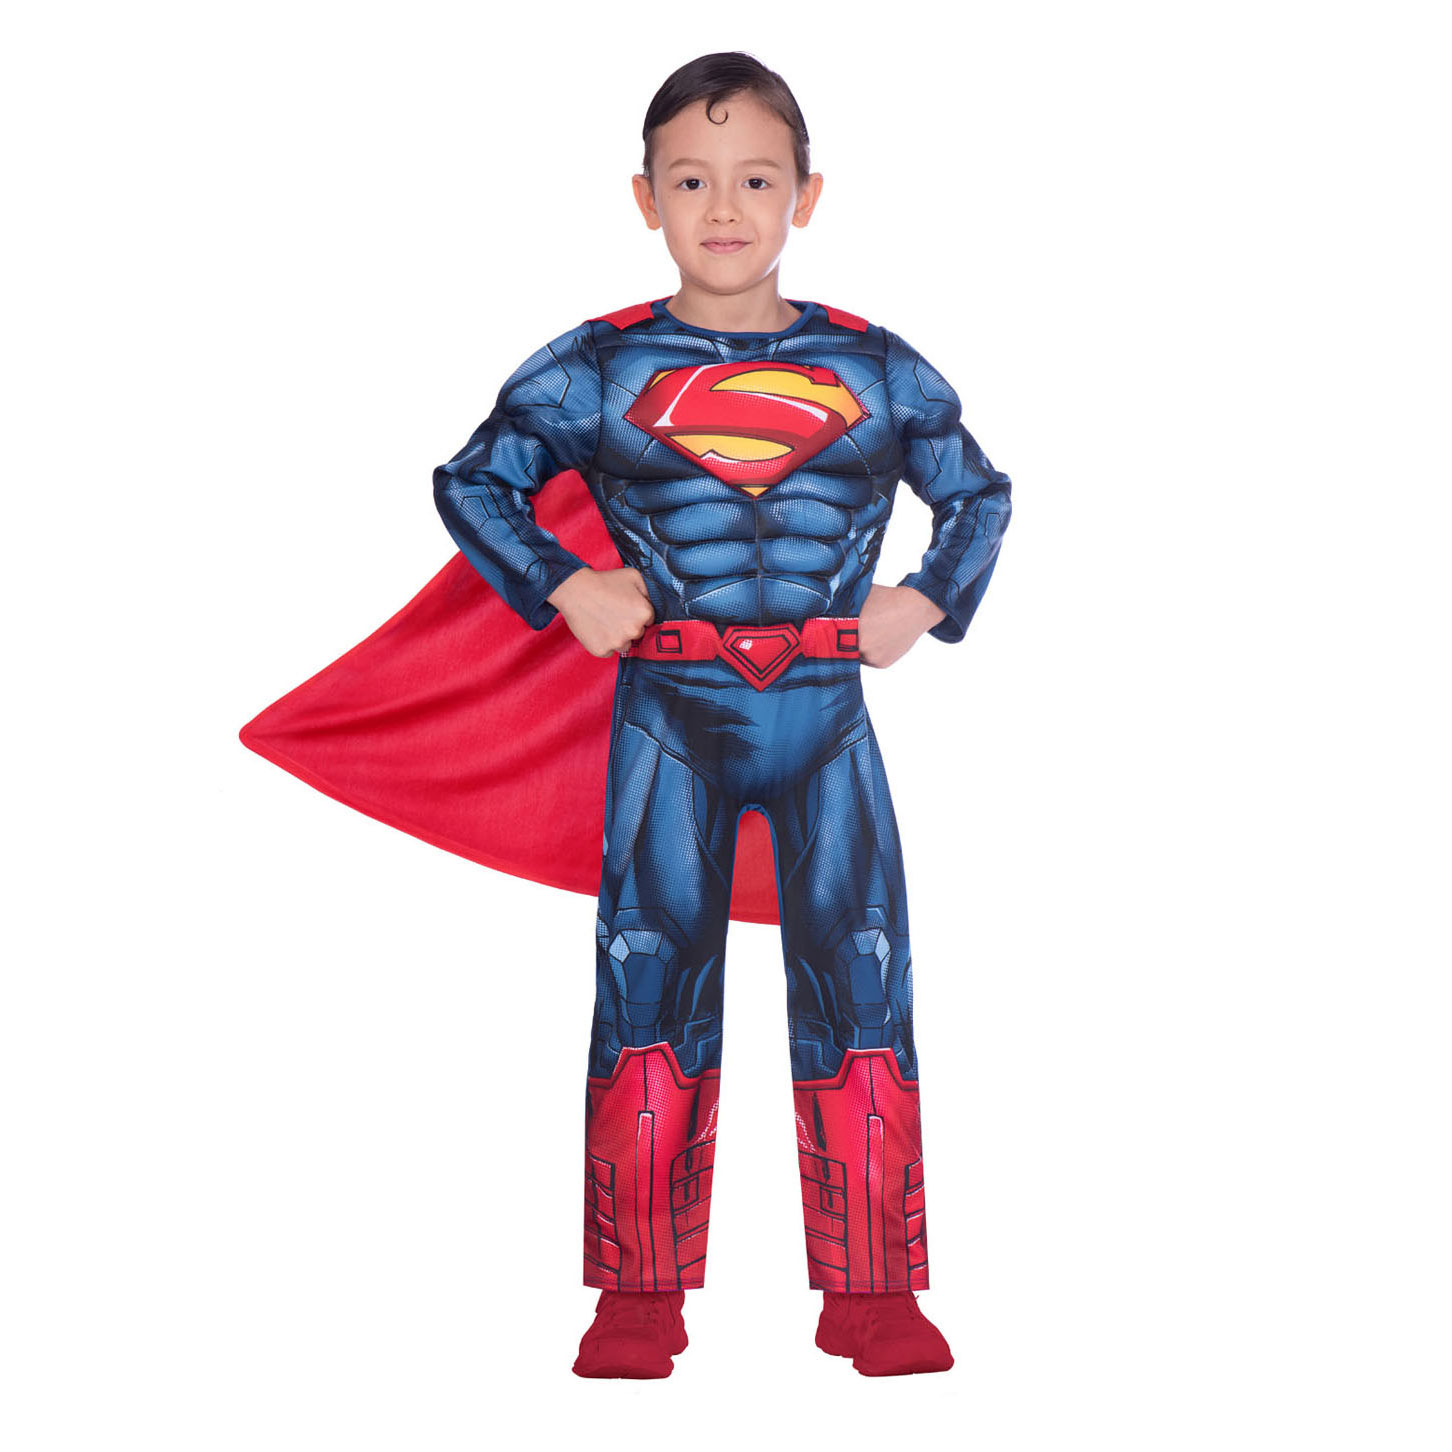 Kinderkostüm Superman Classic, 4-6 Jahre